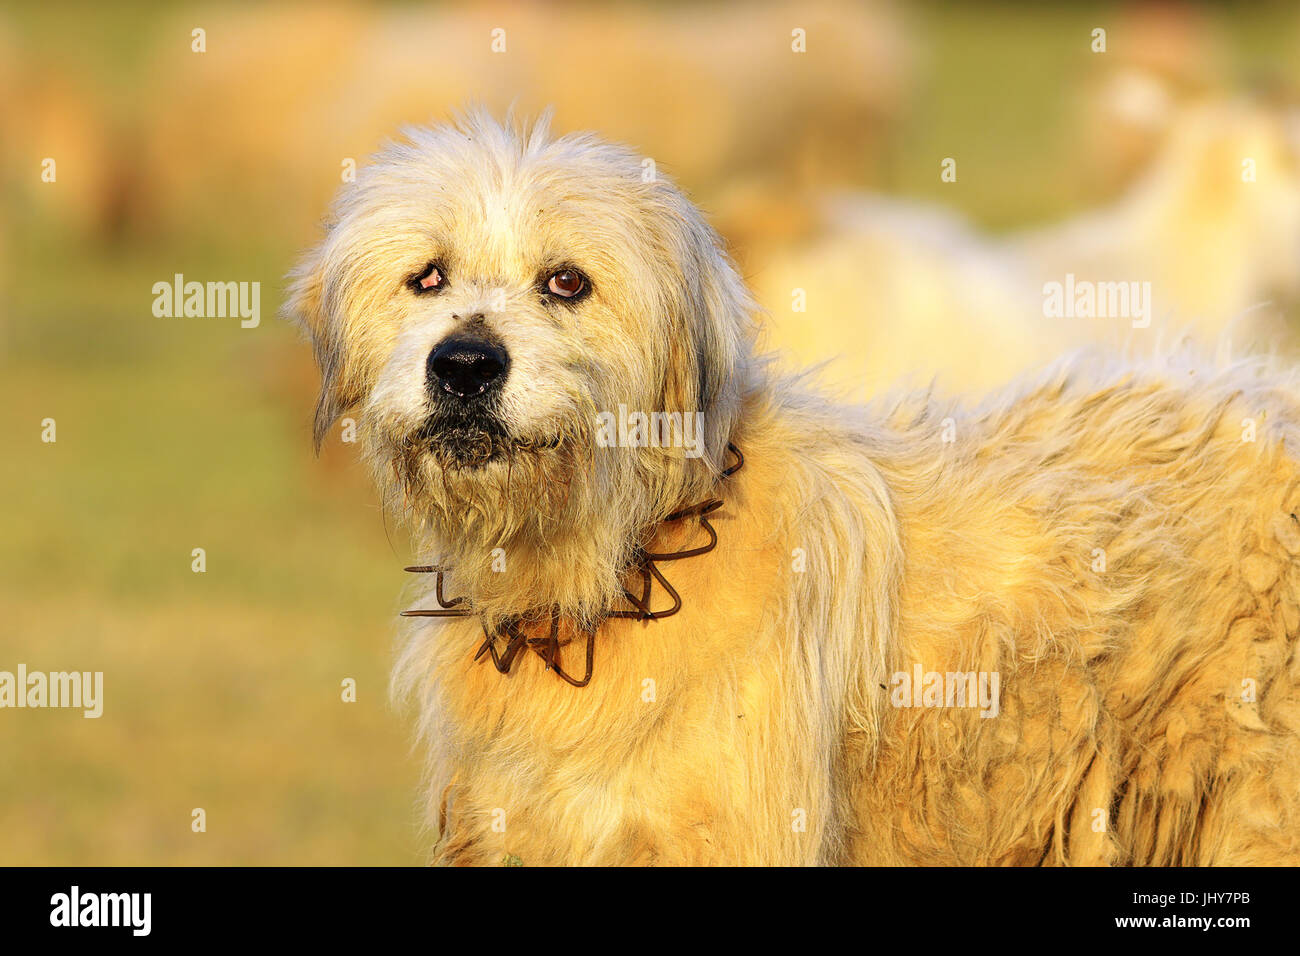 En colère contre le chien de berger blanc regardant la caméra, image prise près de la ferme Banque D'Images